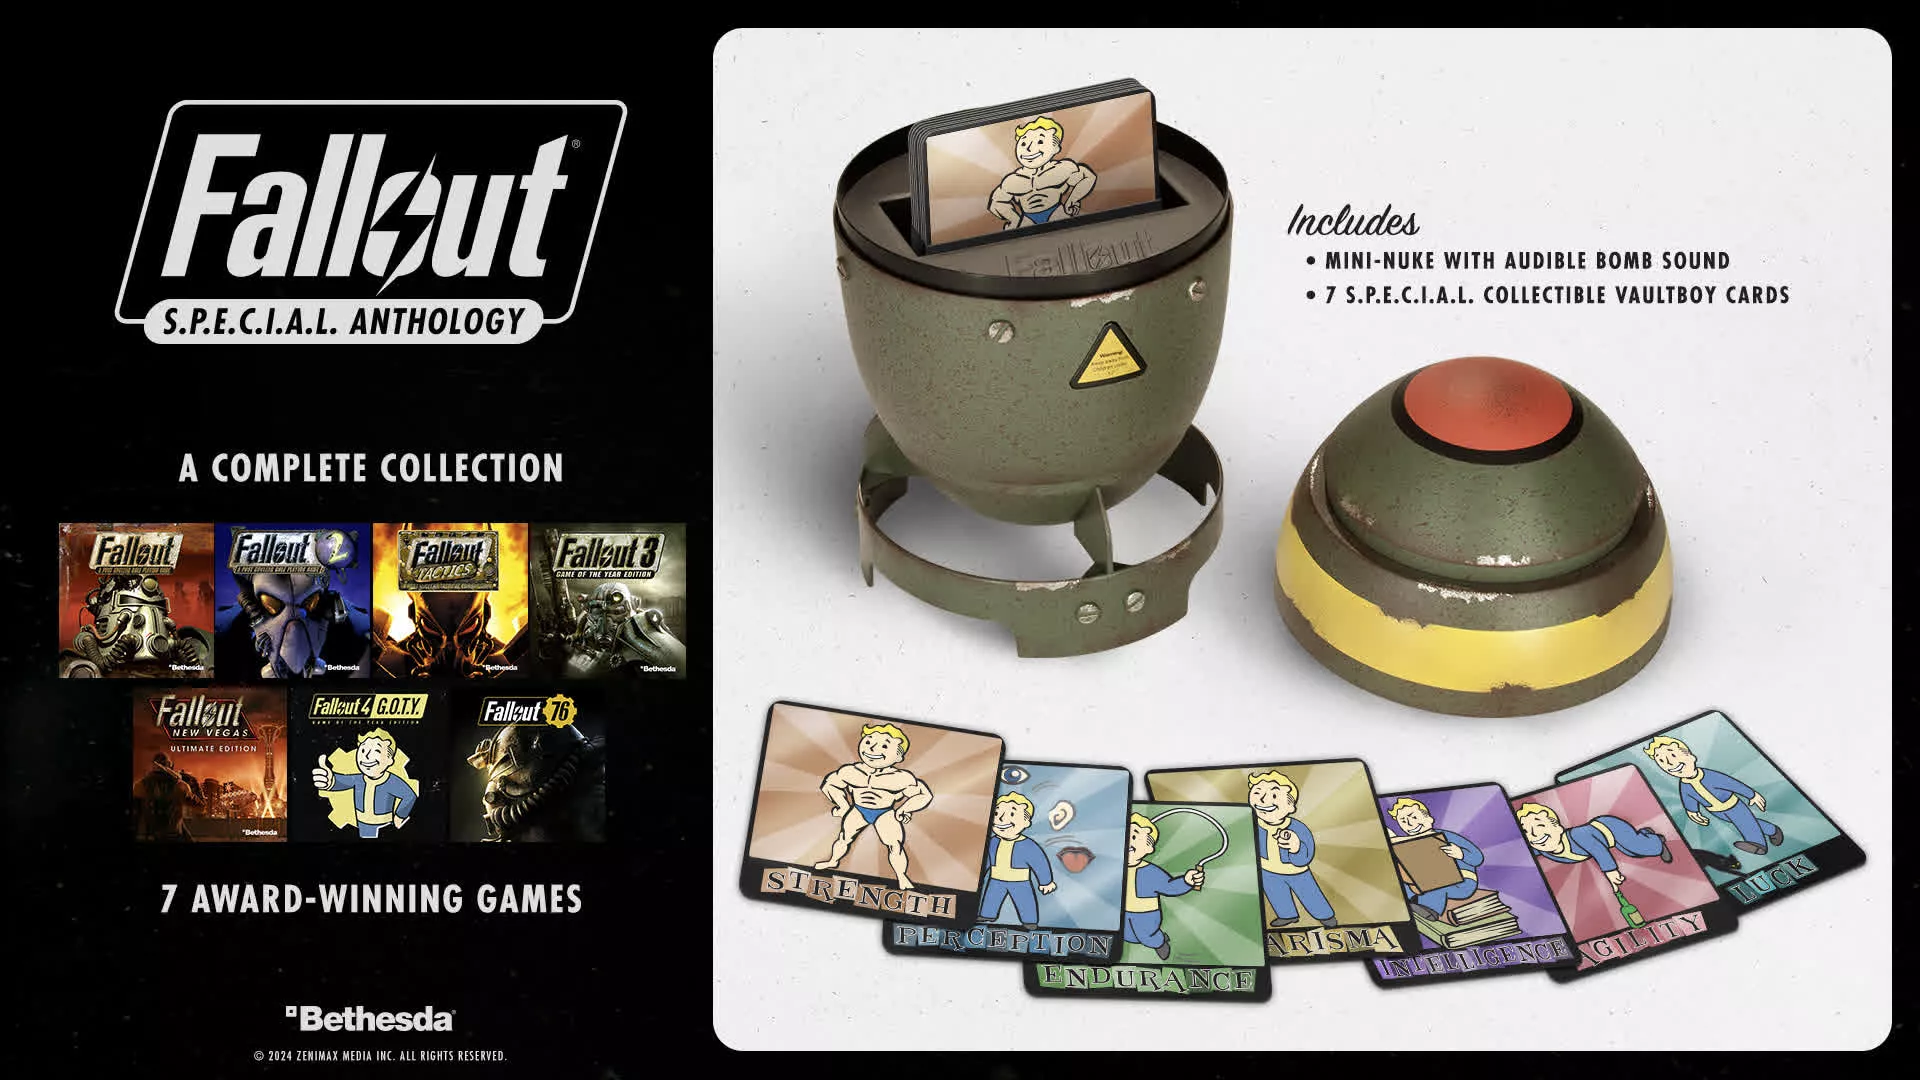 Bethesda lanzará la antología Fallout SPECIAL de 7 juegos con un estuche de mini-nuclear antes del lanzamiento del programa de televisión